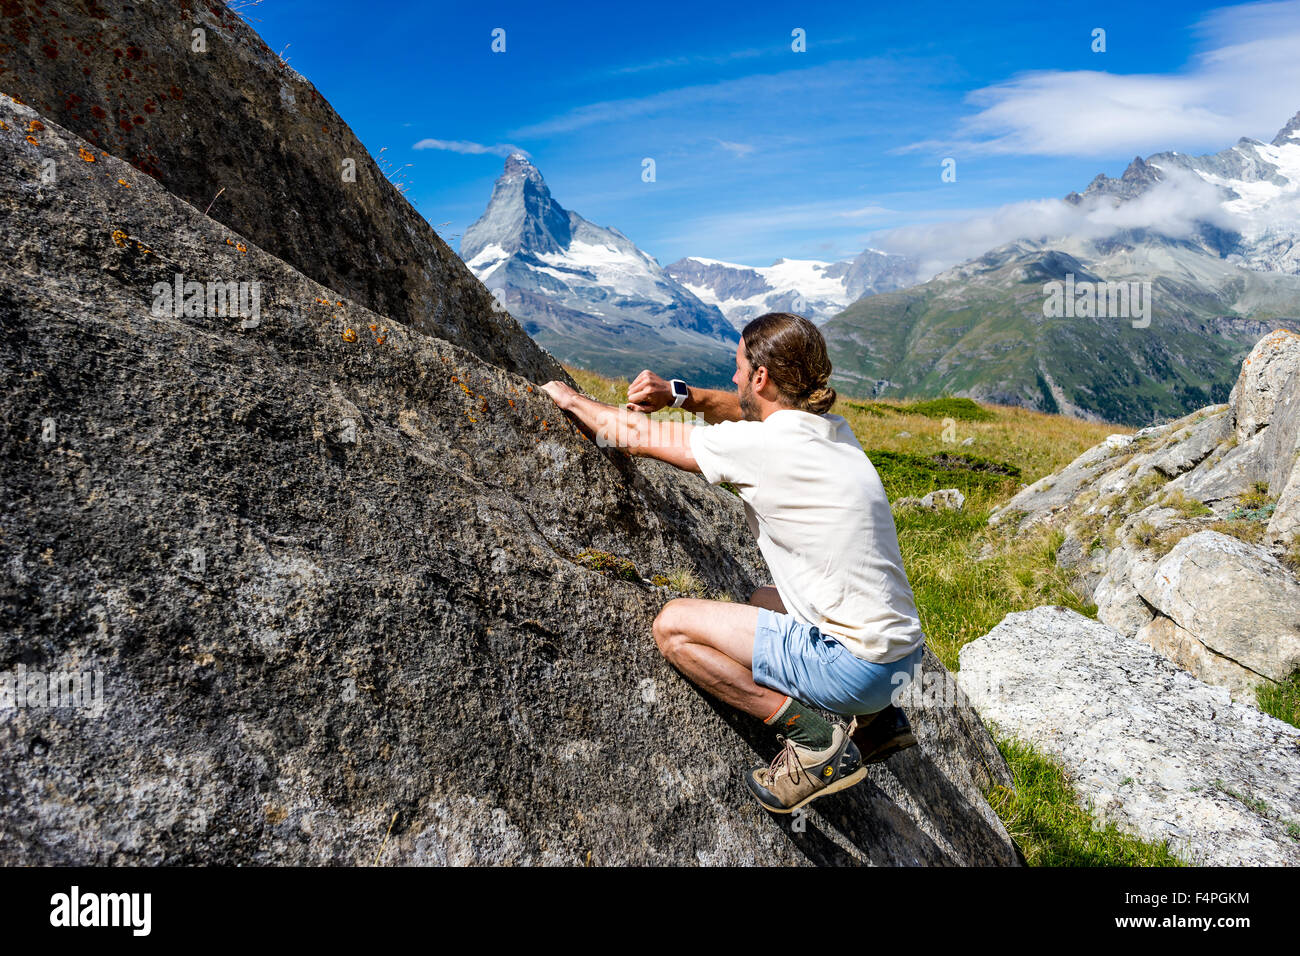 Kletterer nutzt seine Smartwatch auf einem Fels unter dem berühmten Matterhorn-Gipfel. Juli 2015. Matterhorn, Schweiz. Stockfoto